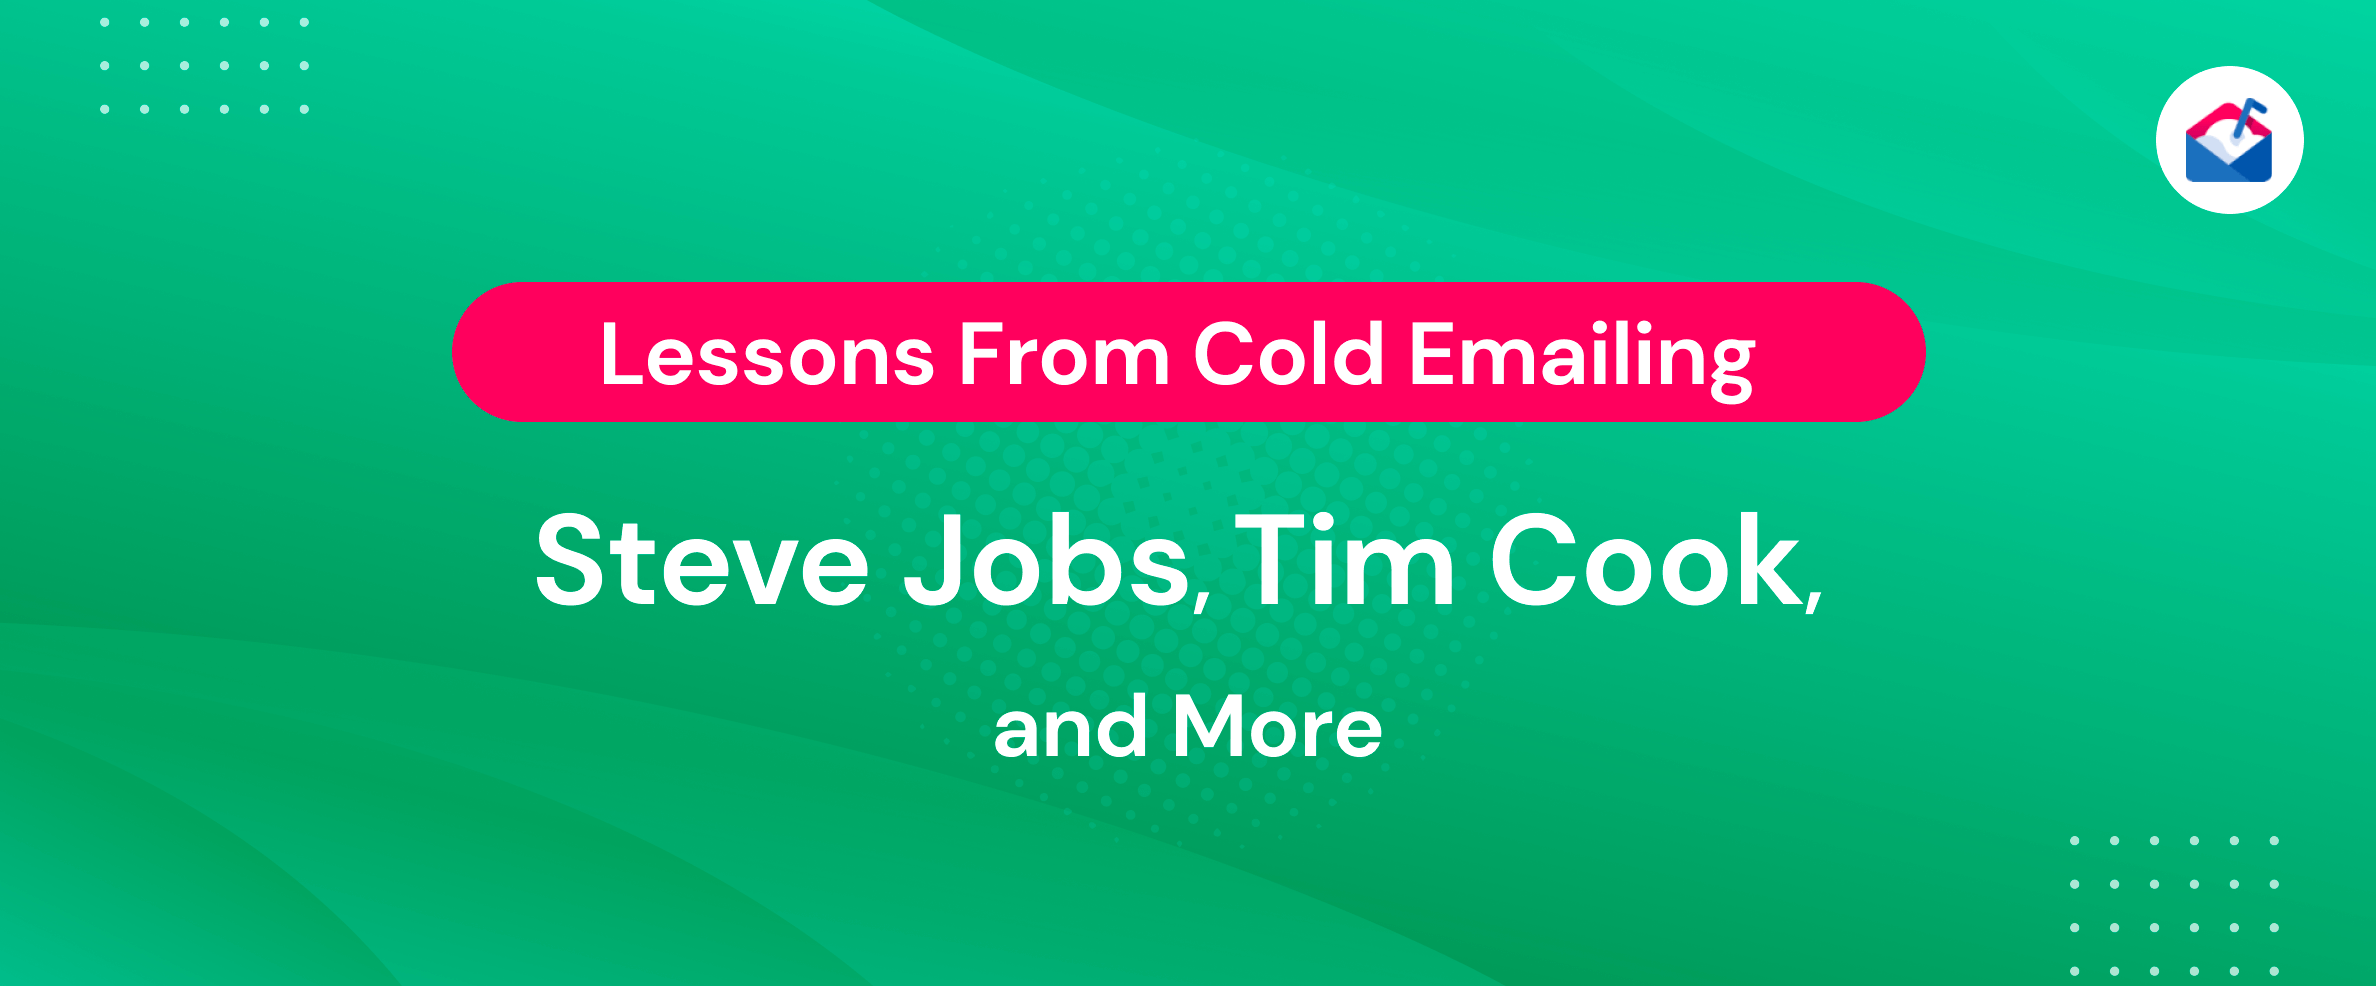 Lecciones de enviar correos electrónicos fríos a Steve Jobs, Tim Cook y más